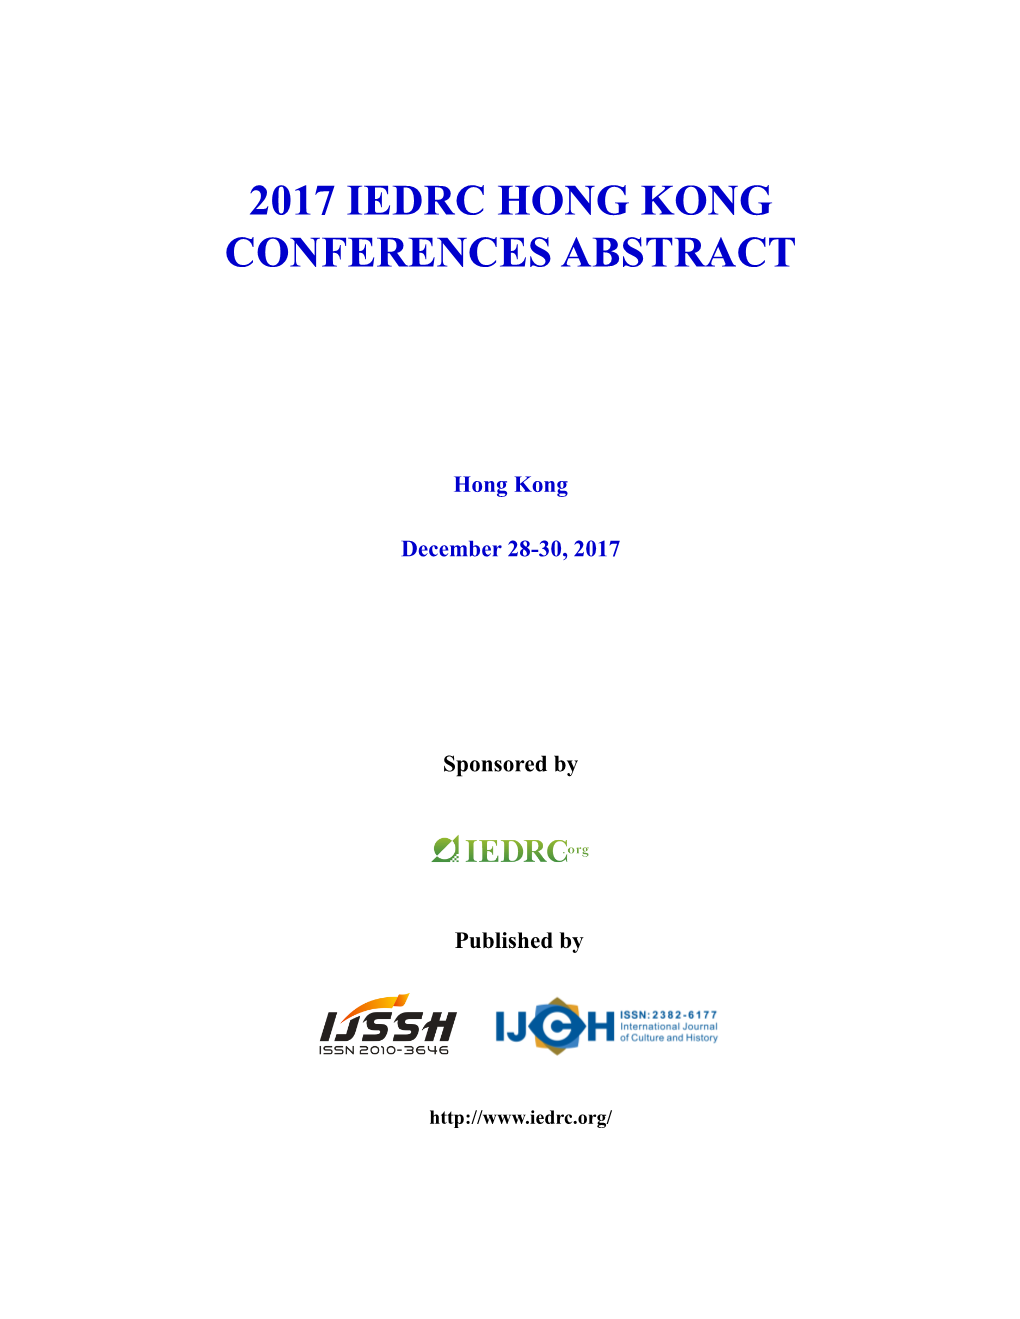 2017 Iedrc Hong Kong Conferences Abstract